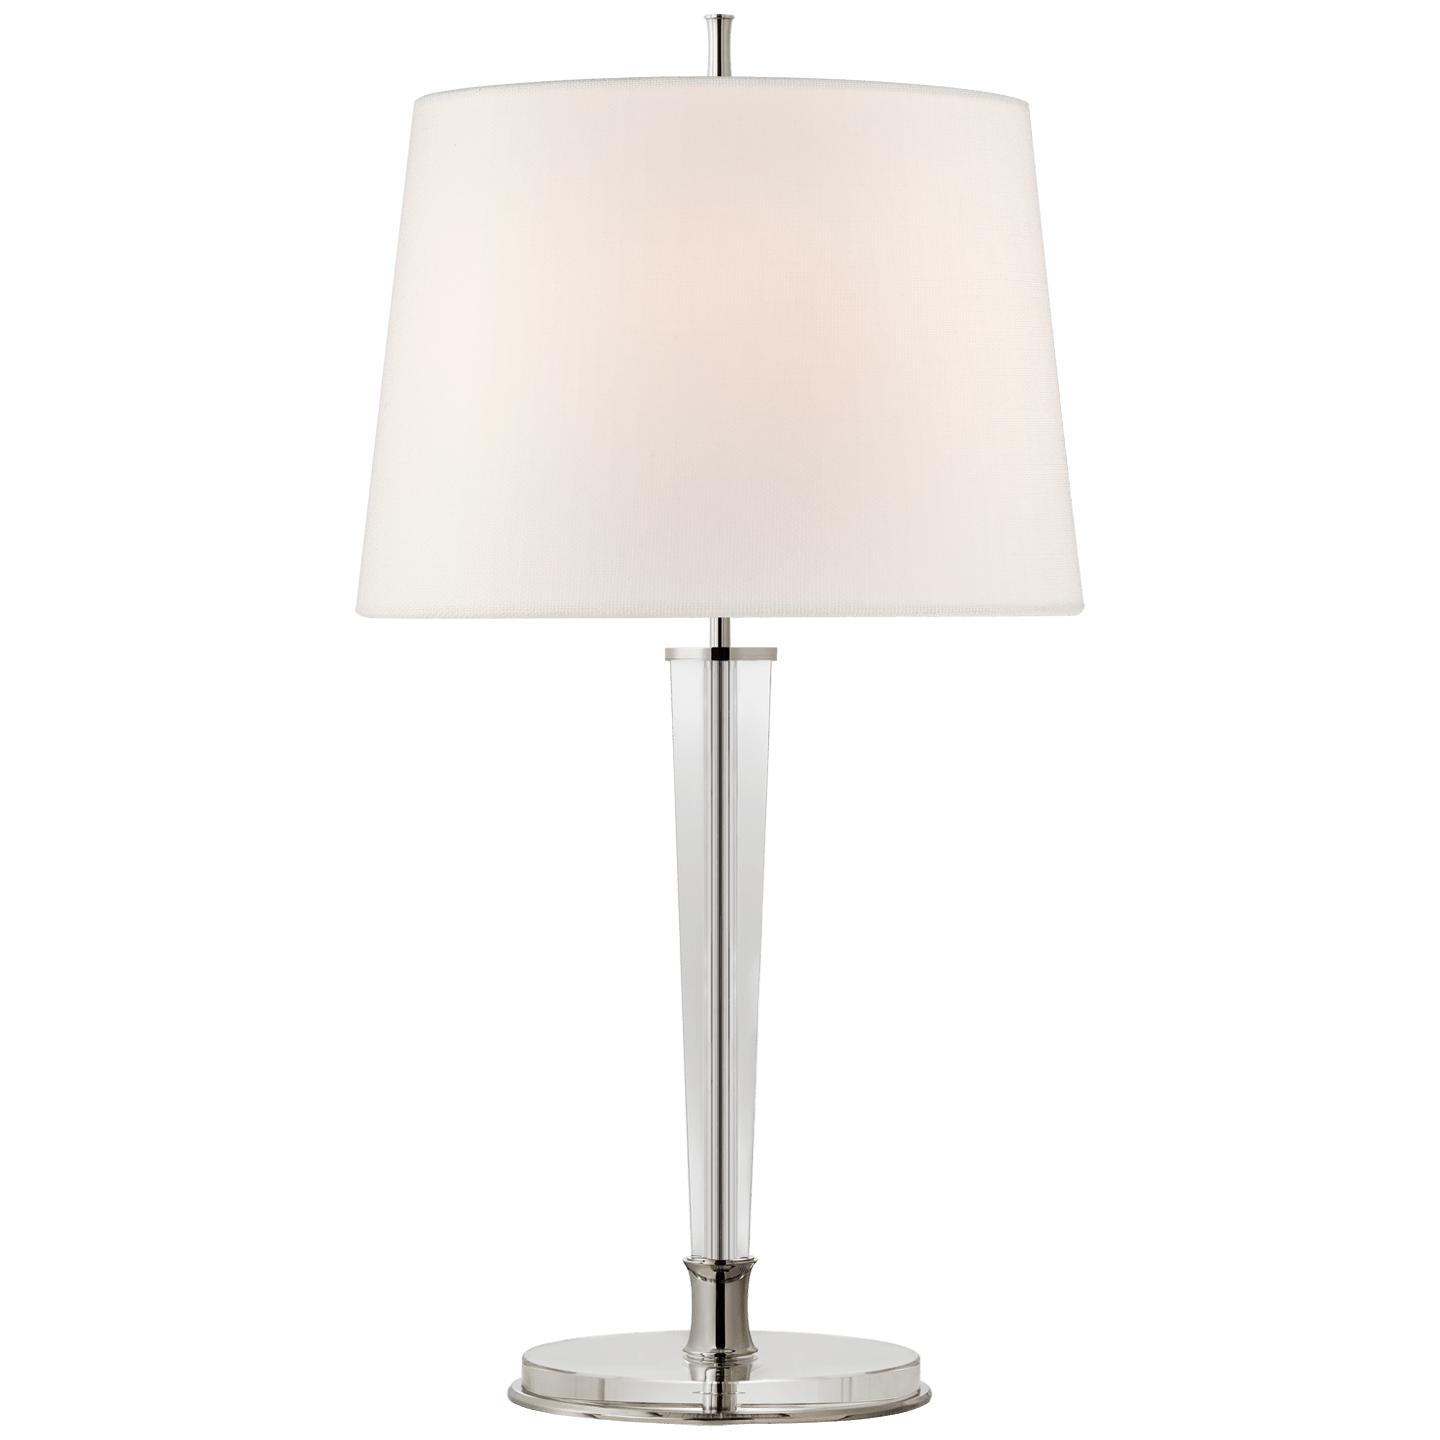 Купить Настольная лампа Lyra Large Table Lamp в интернет-магазине roooms.ru